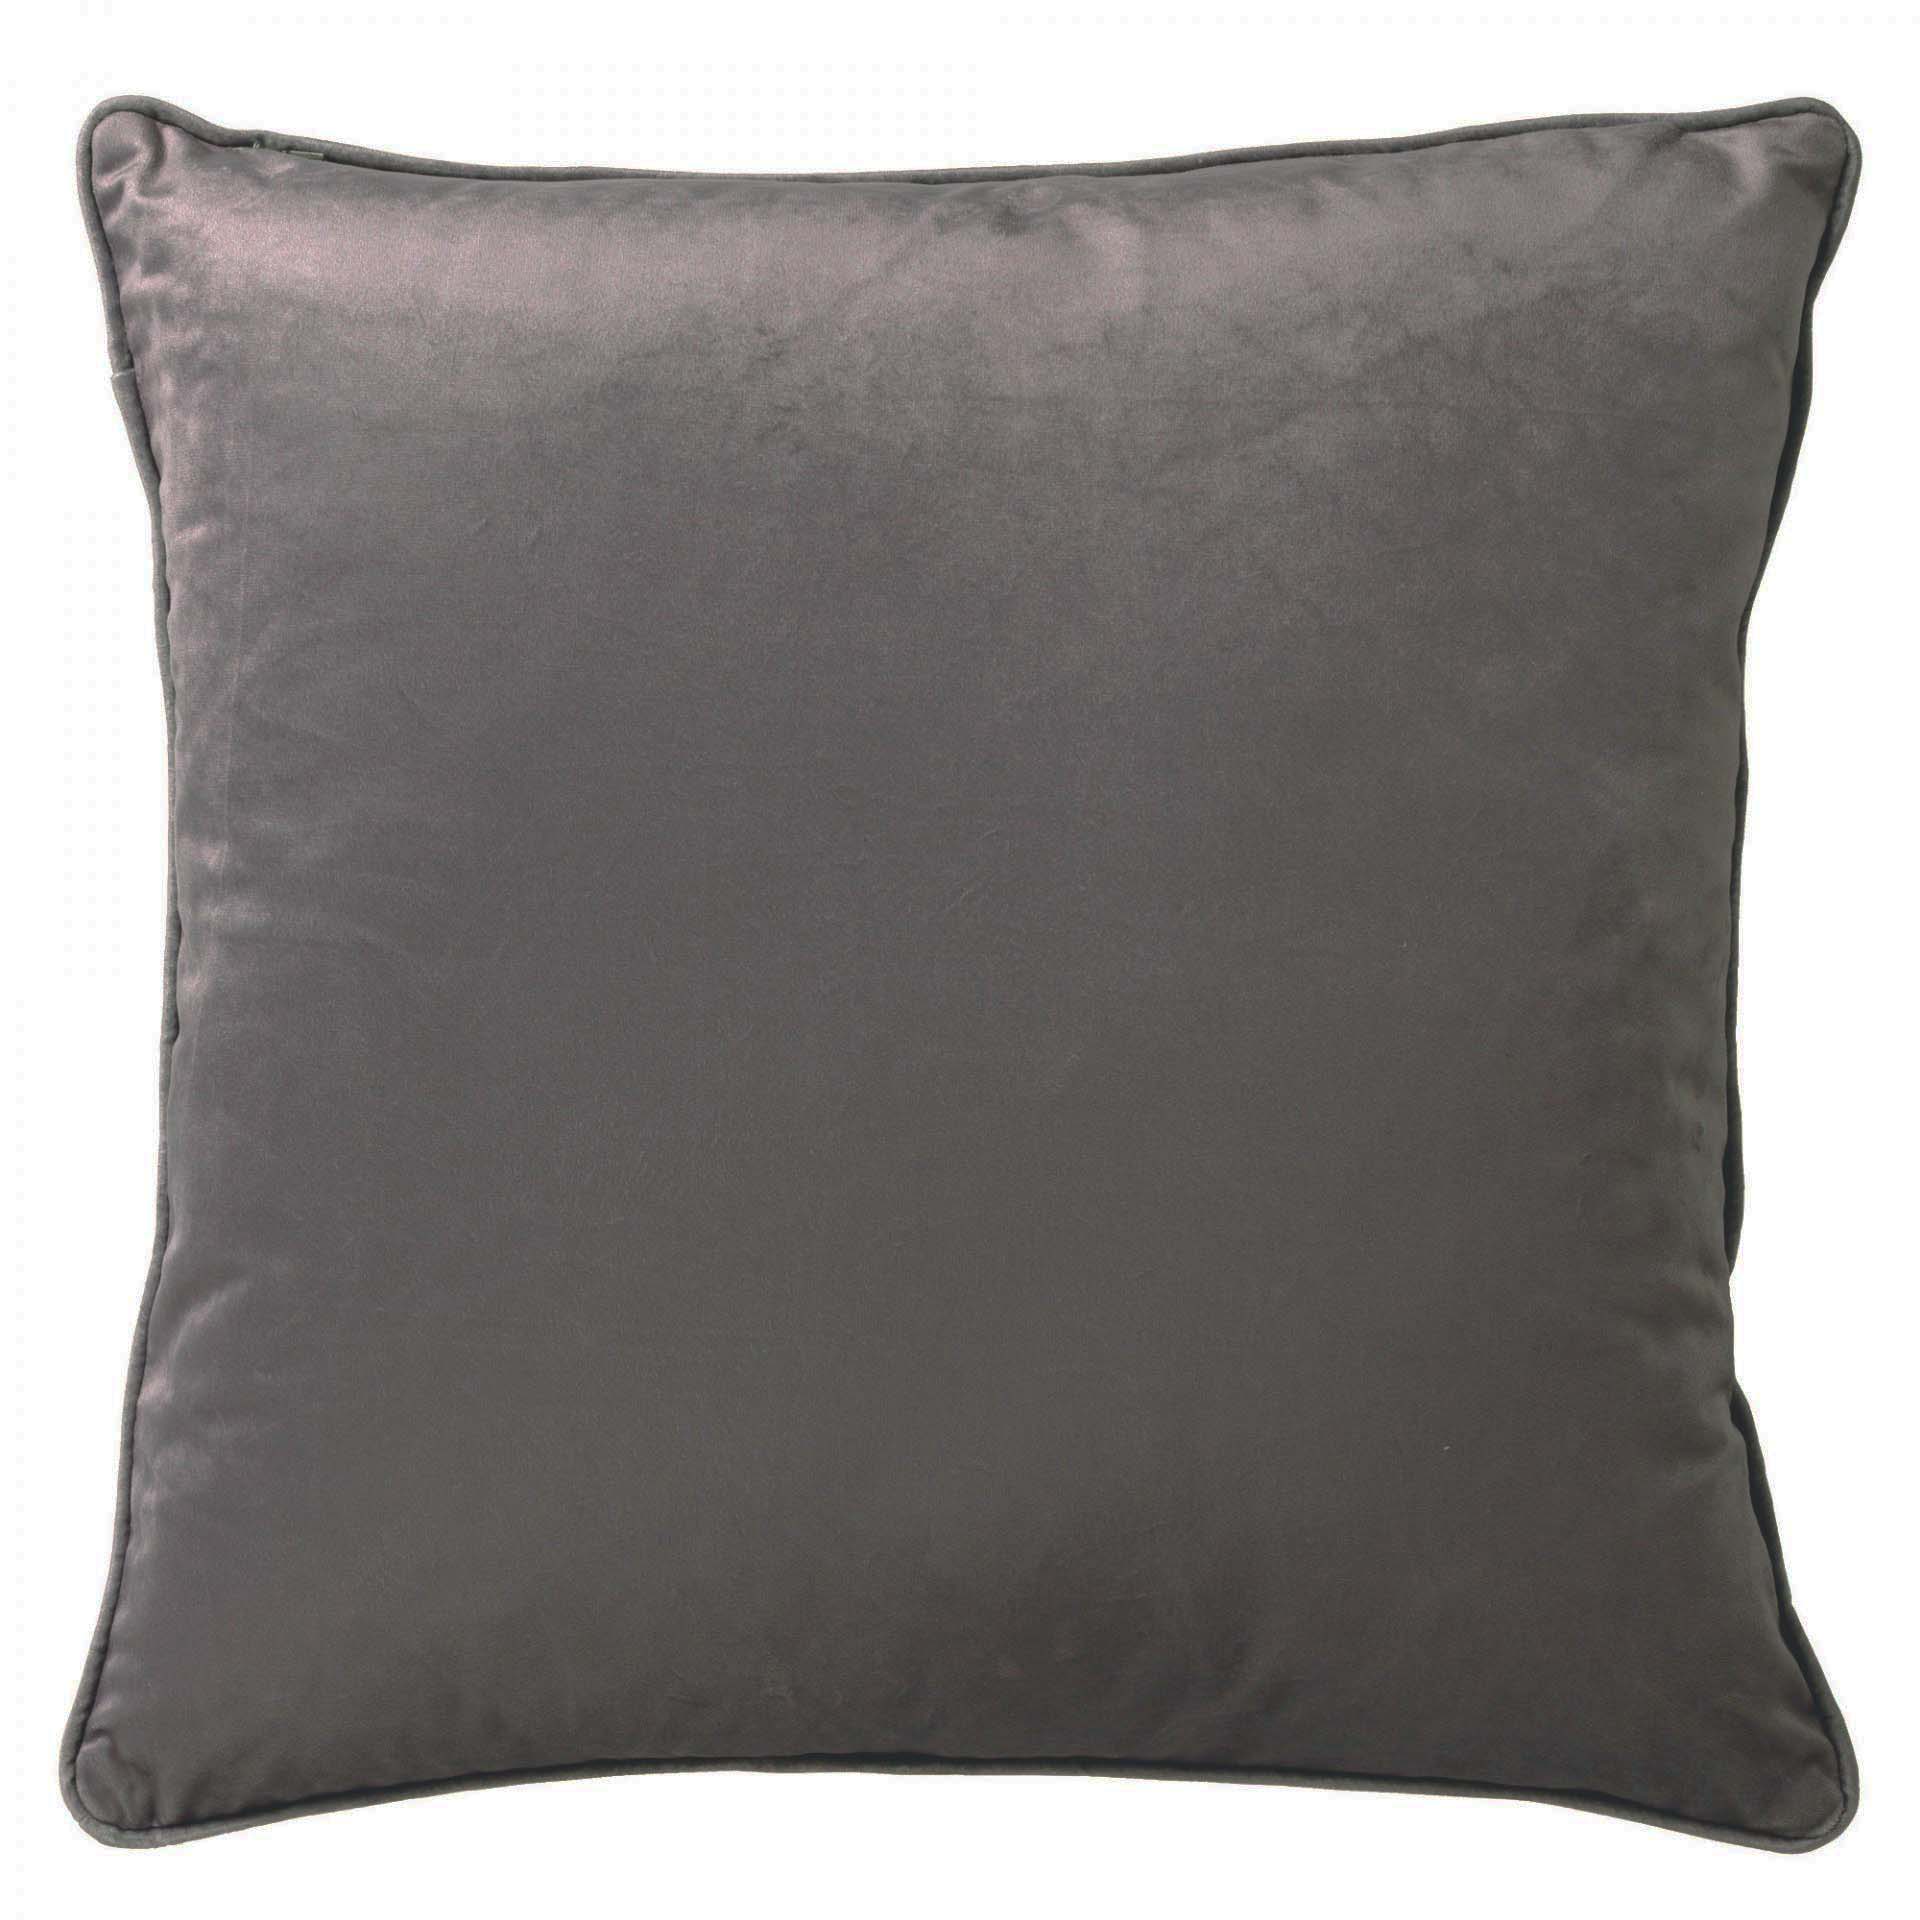 FINN - Cushion 45x45 cm taupe - brown 